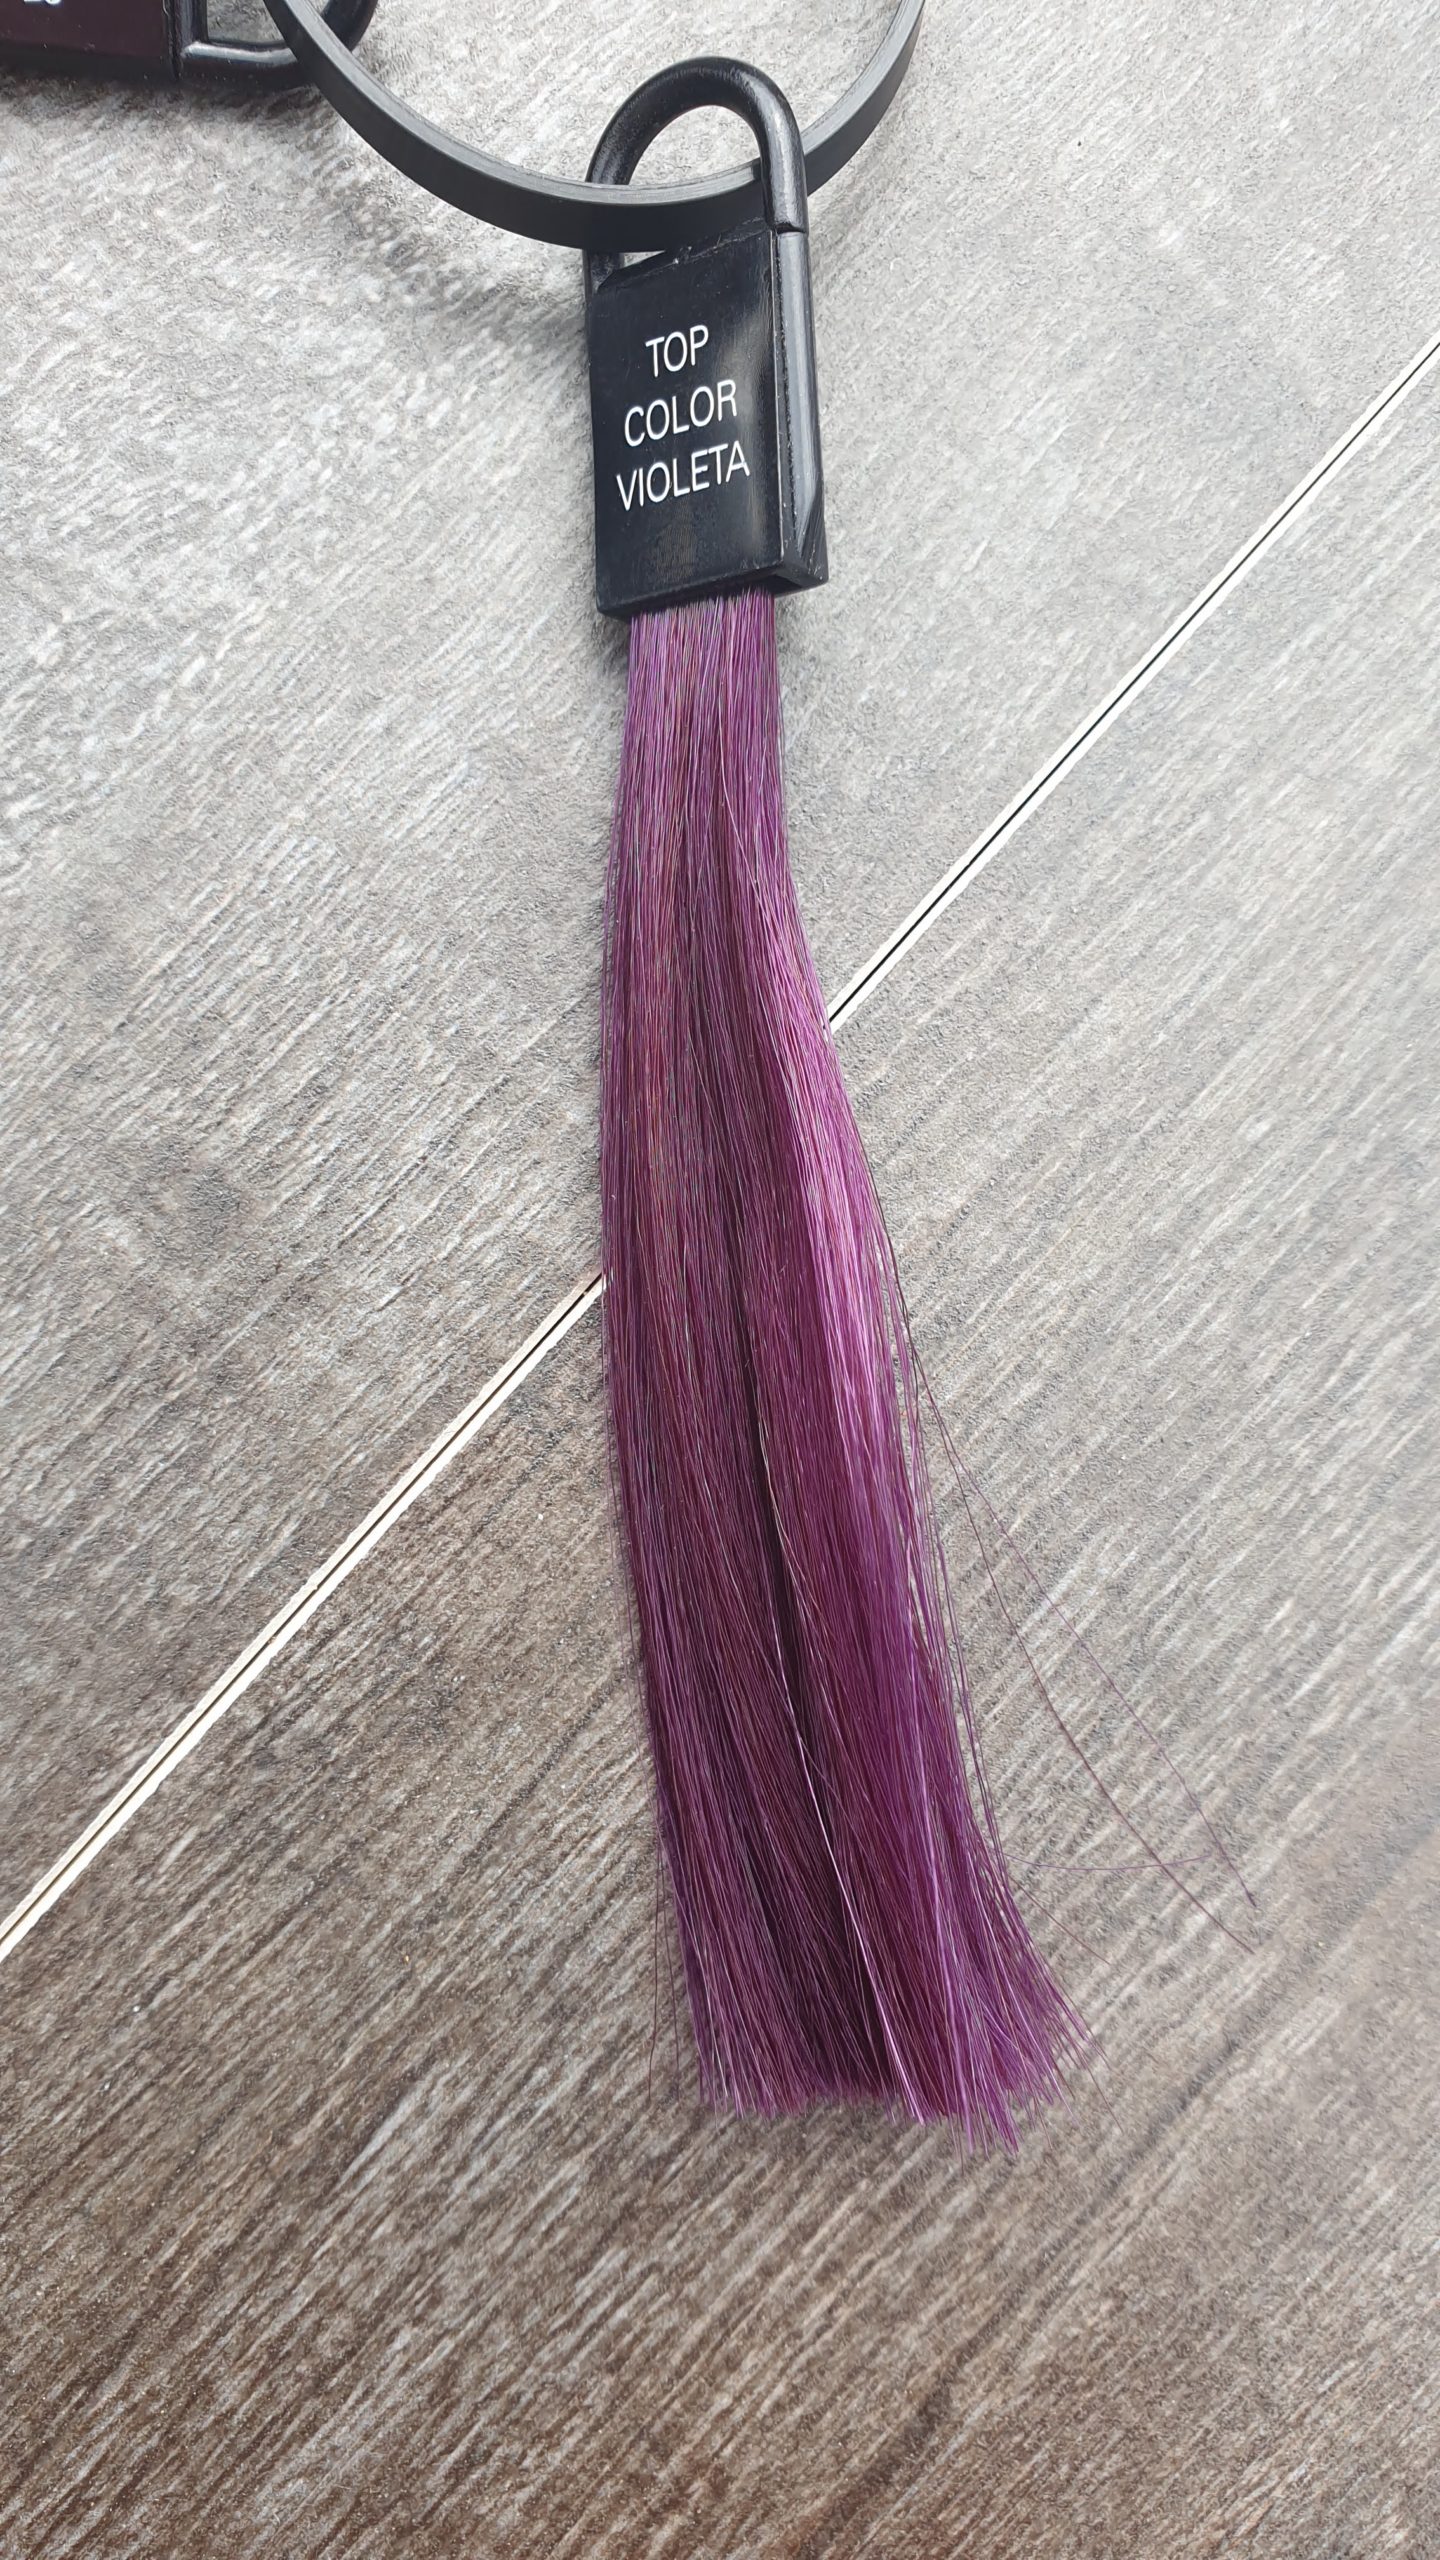 Top Color kleur conditioner Violetta paars